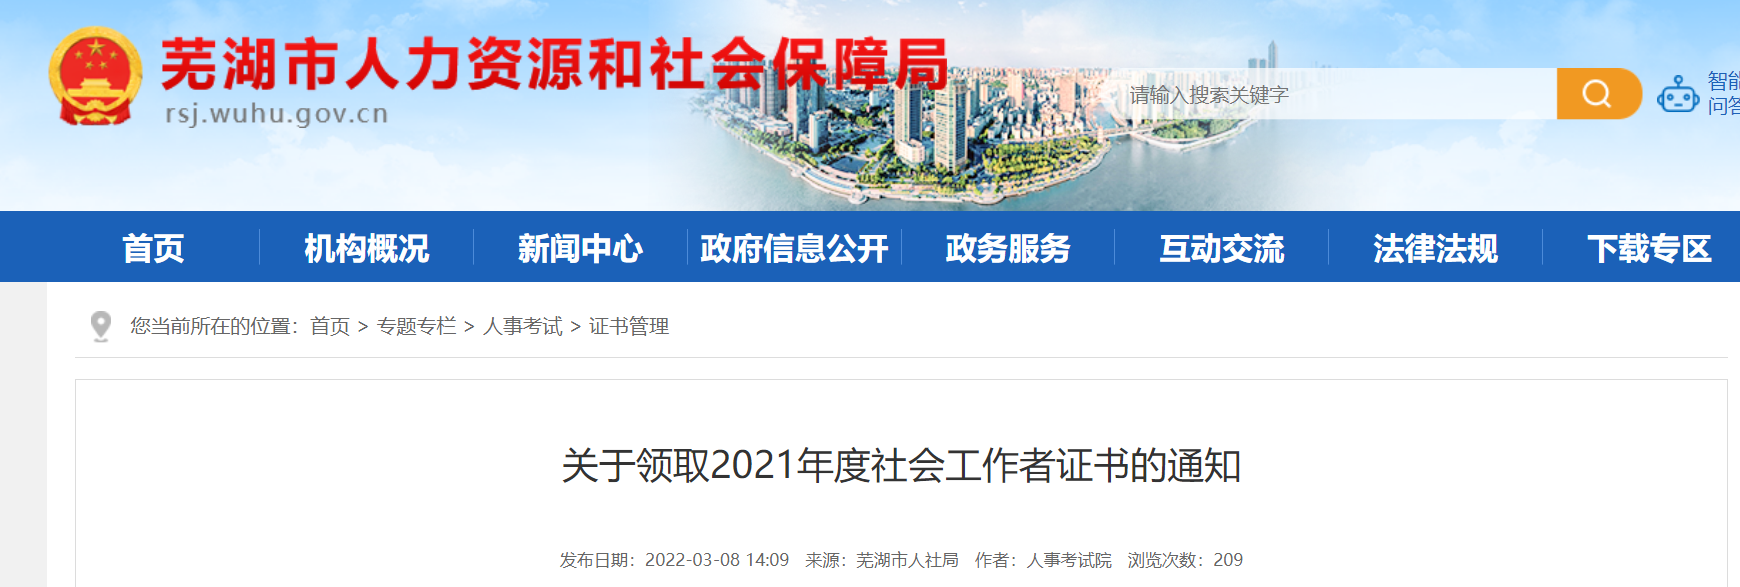 2021年安徽芜湖社会工作者证书领取通知